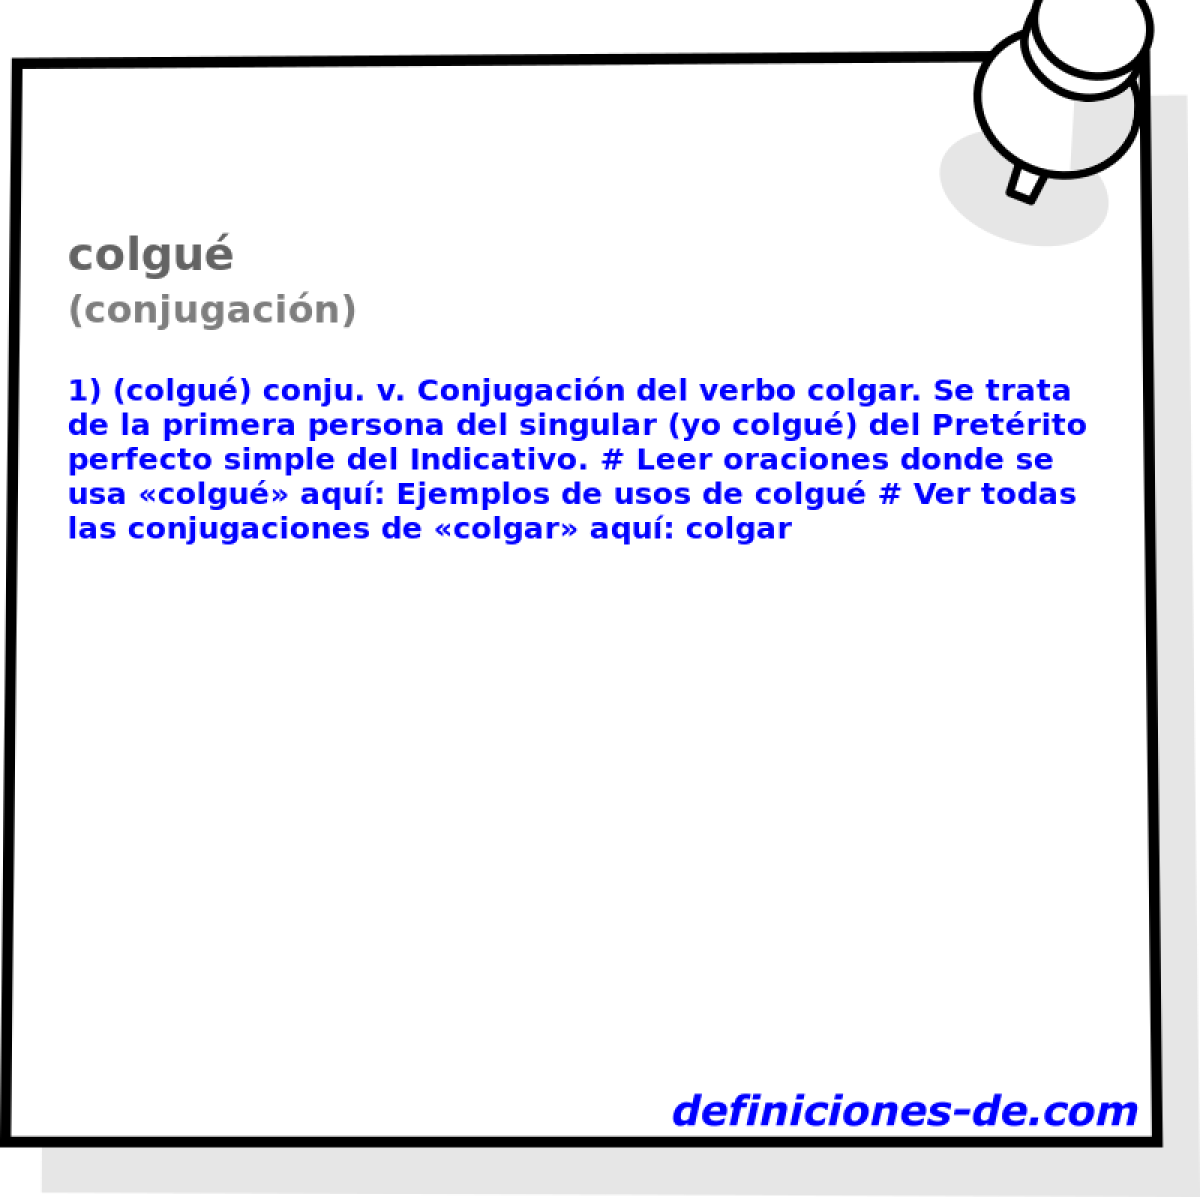 colgu (conjugacin)